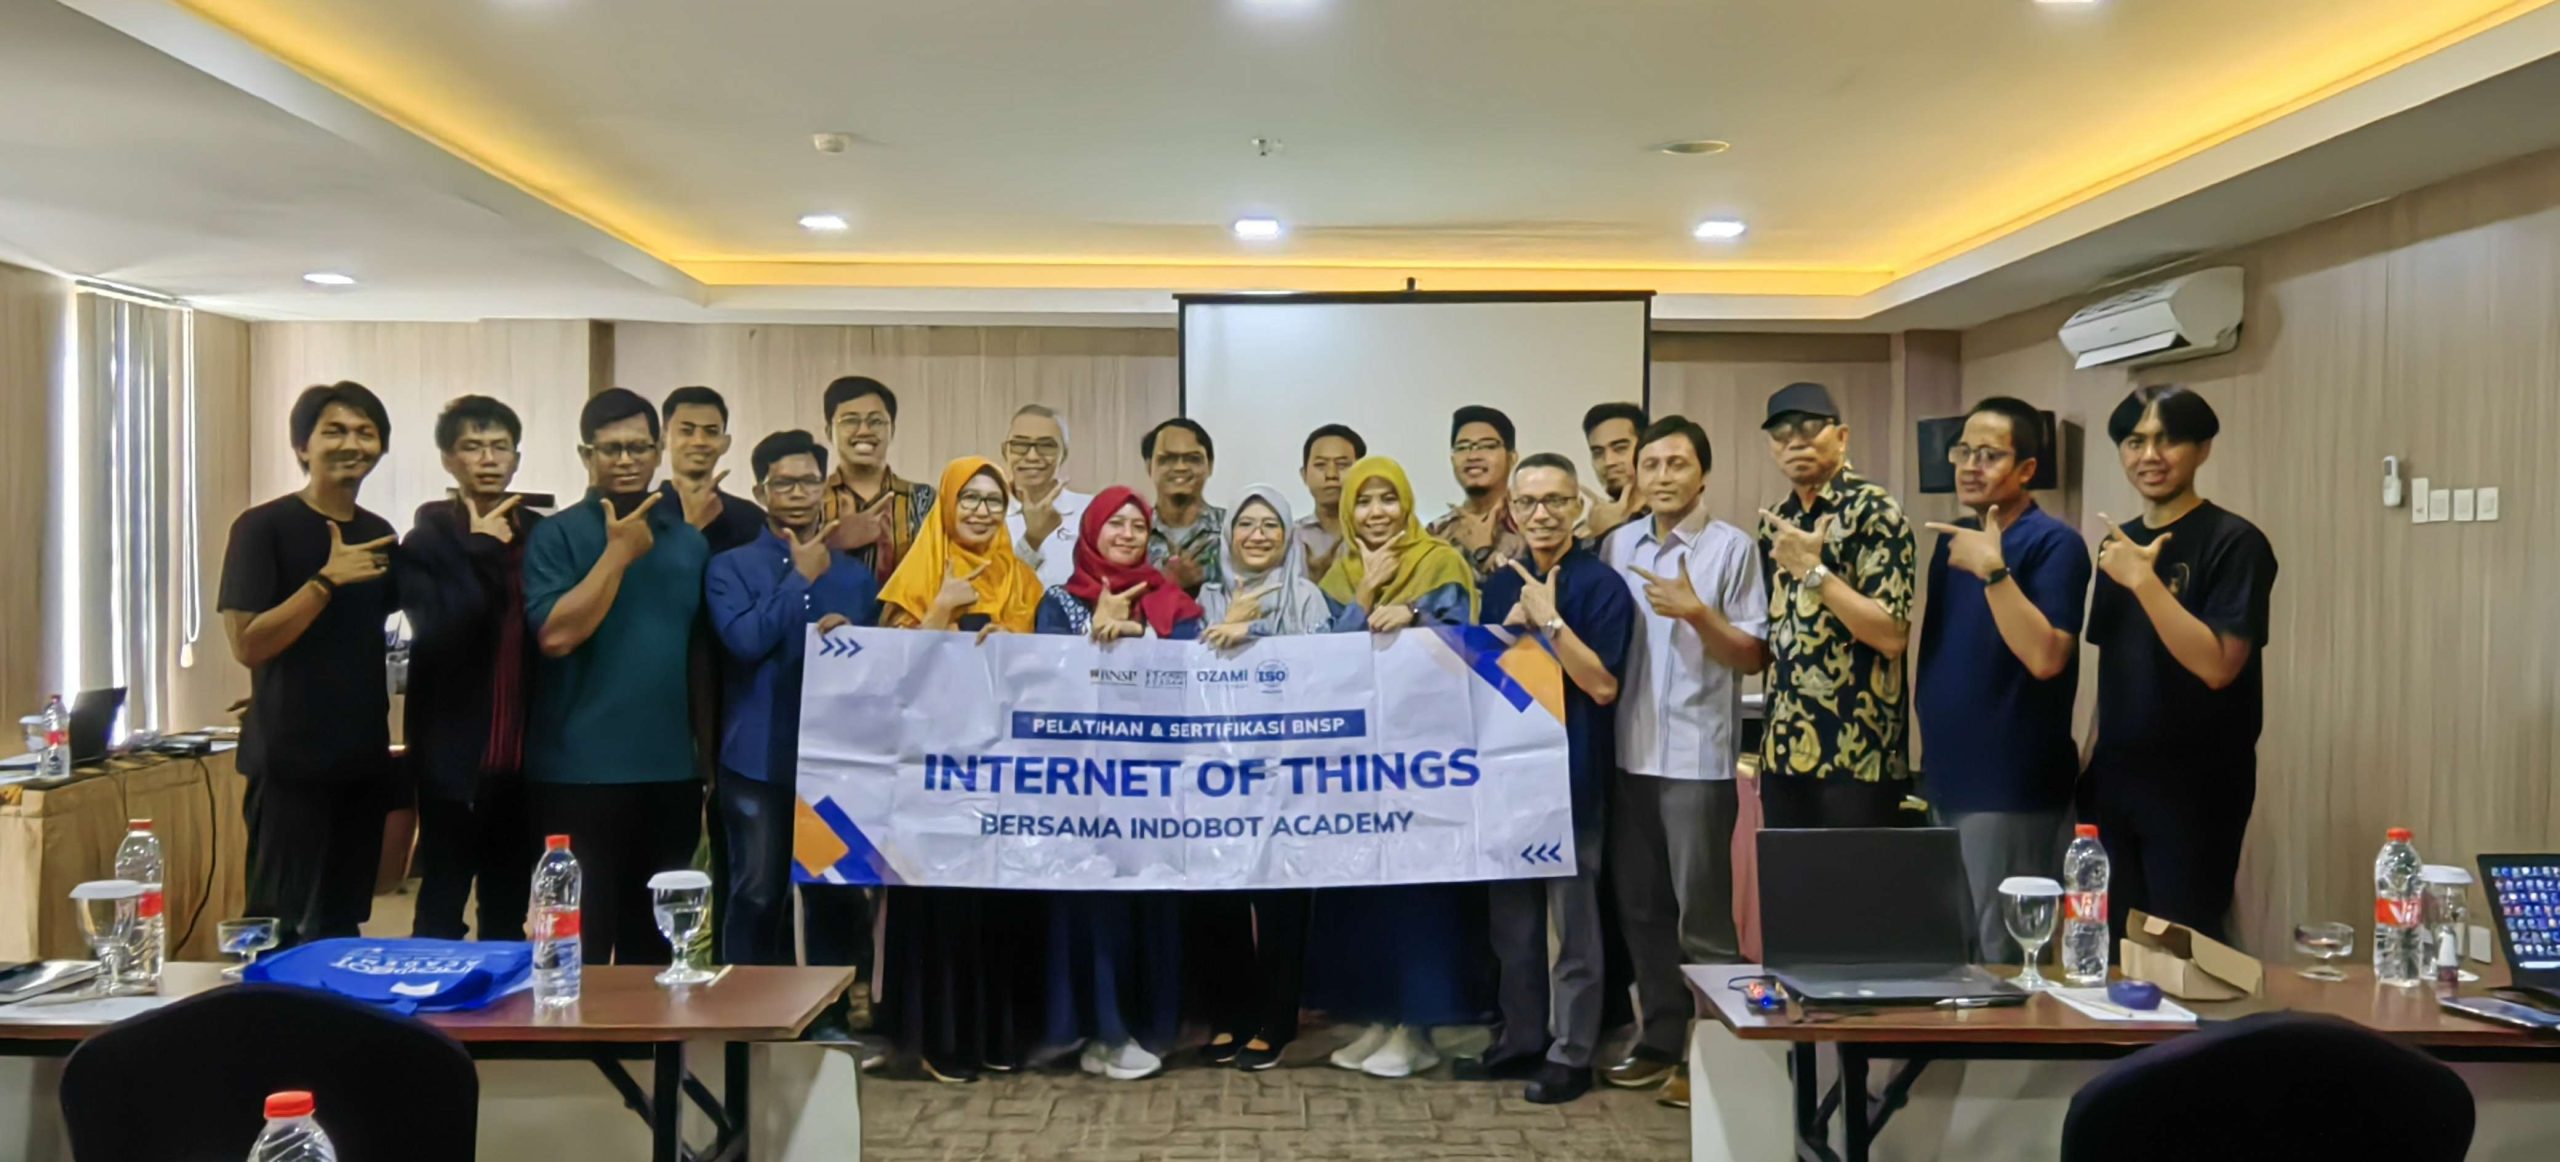 MySertifikasi Gelar Sertifikasi BNSP Internet of Things Bersama 20 Peserta di Yogyakarta